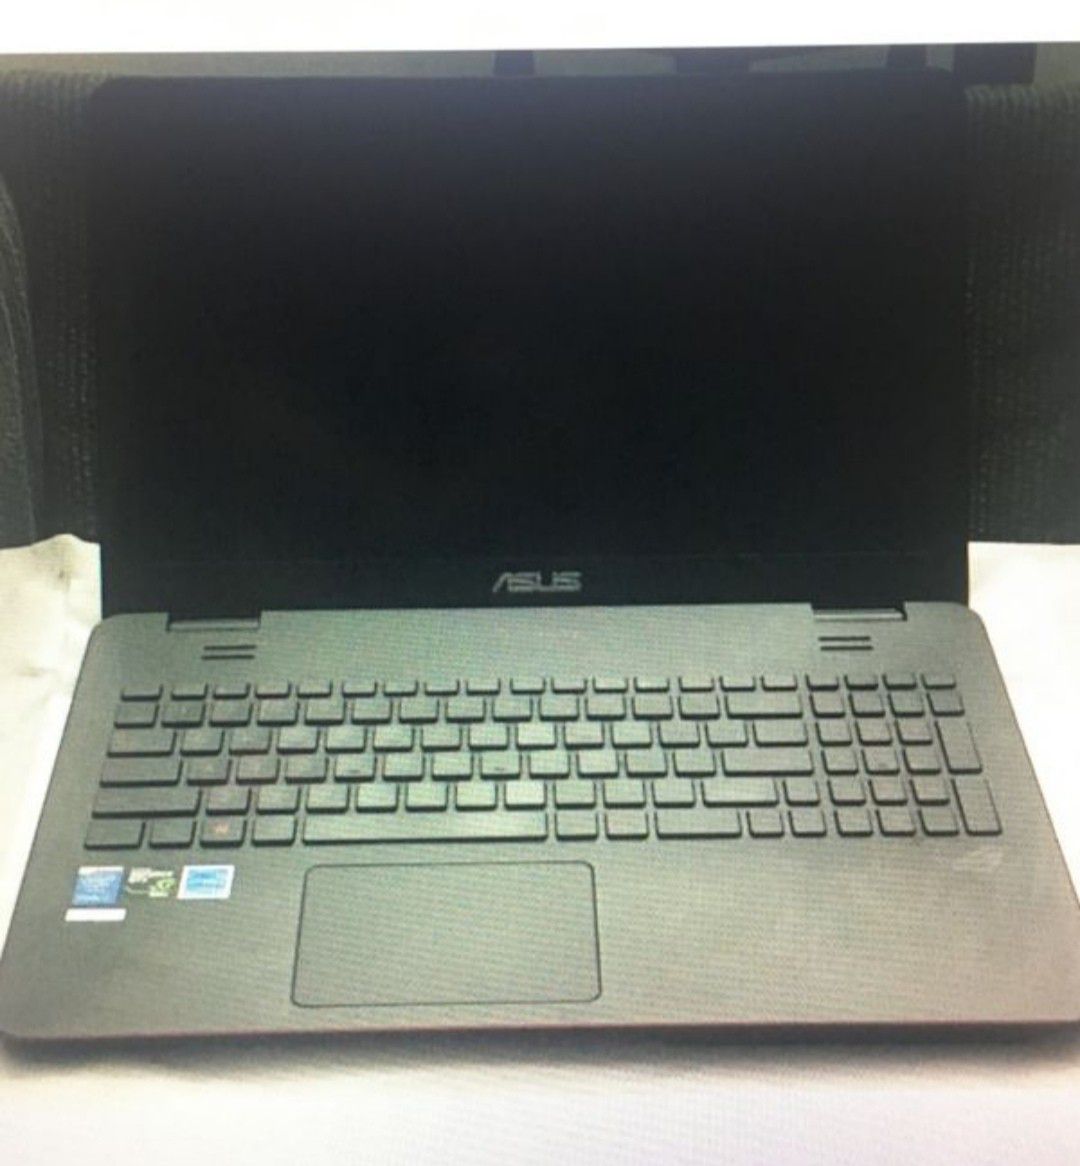 ASUS ROG GL551jw-ds71 Laptop